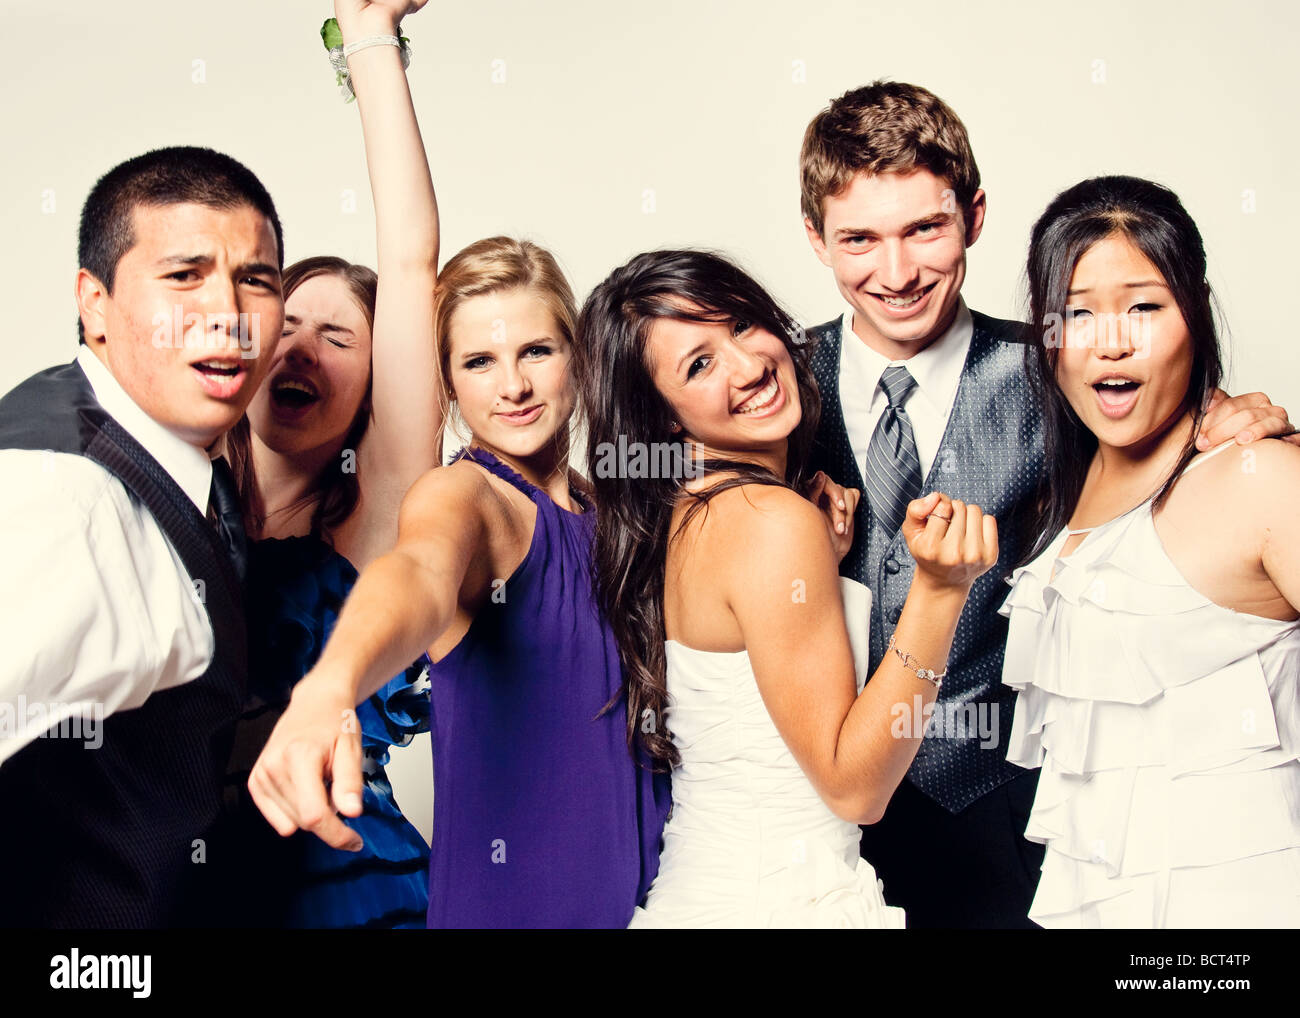 Los adolescentes bailando en prom. Foto de stock